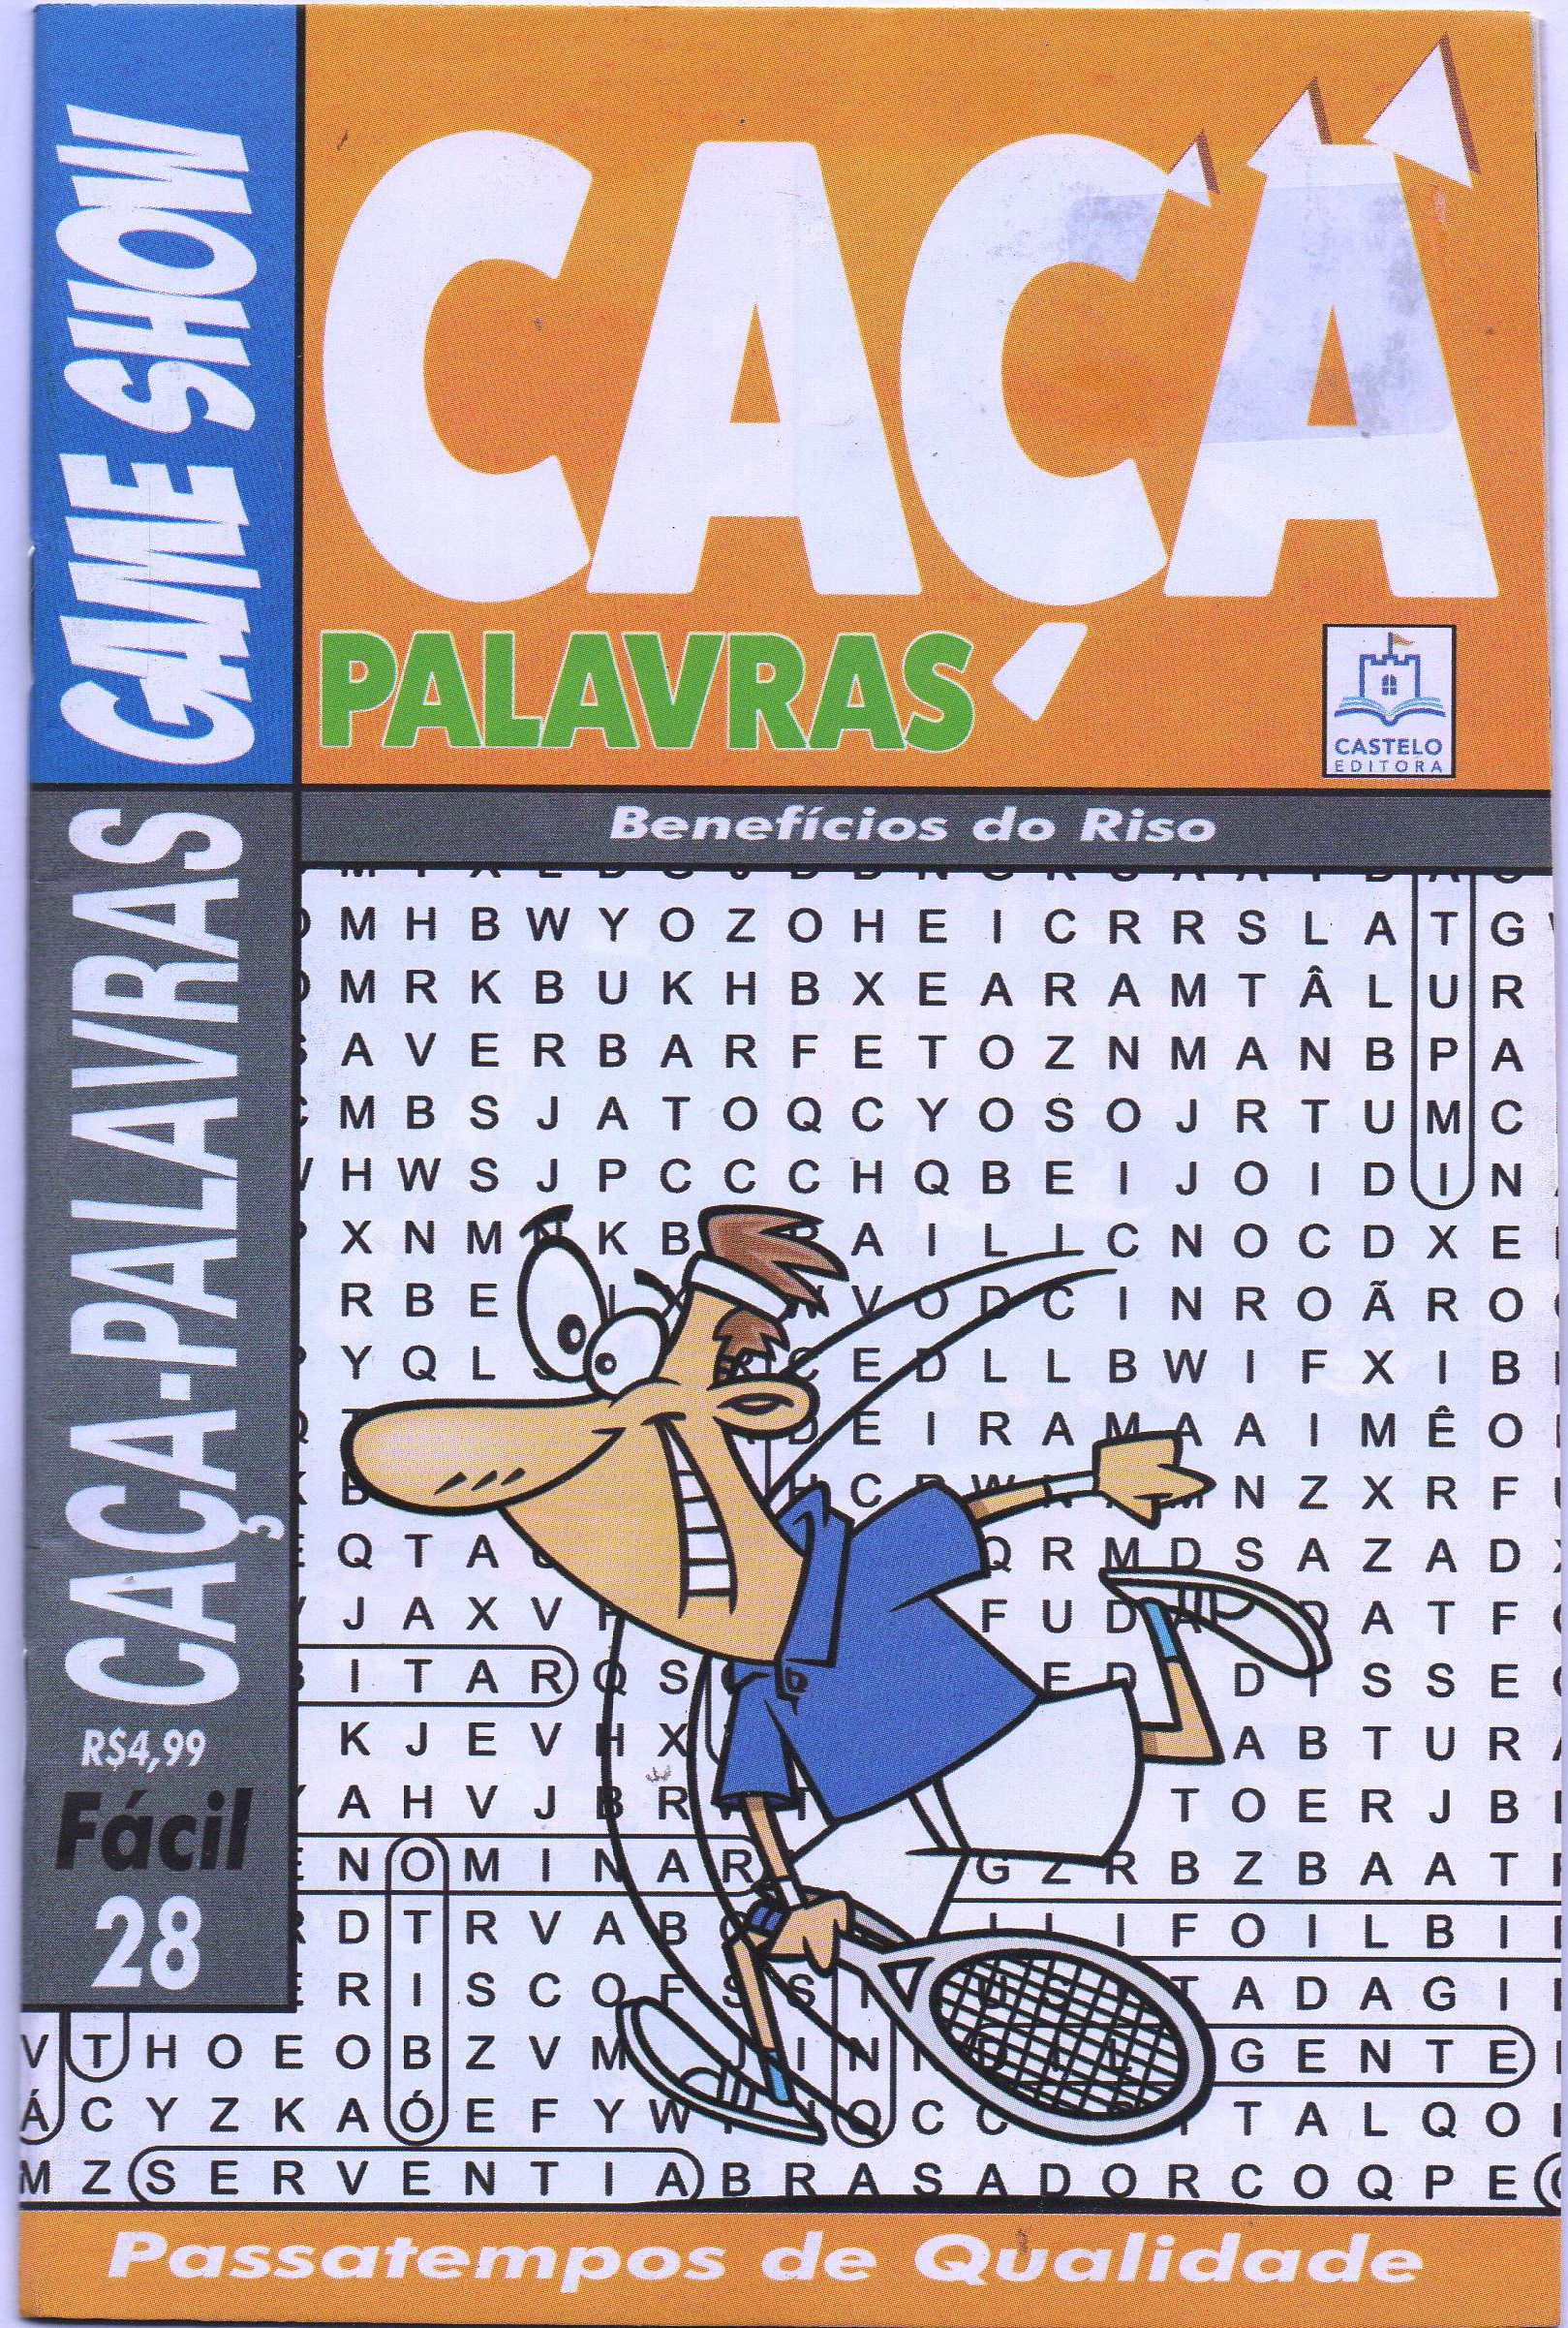 Caca Palavras.games - Jornal Joca